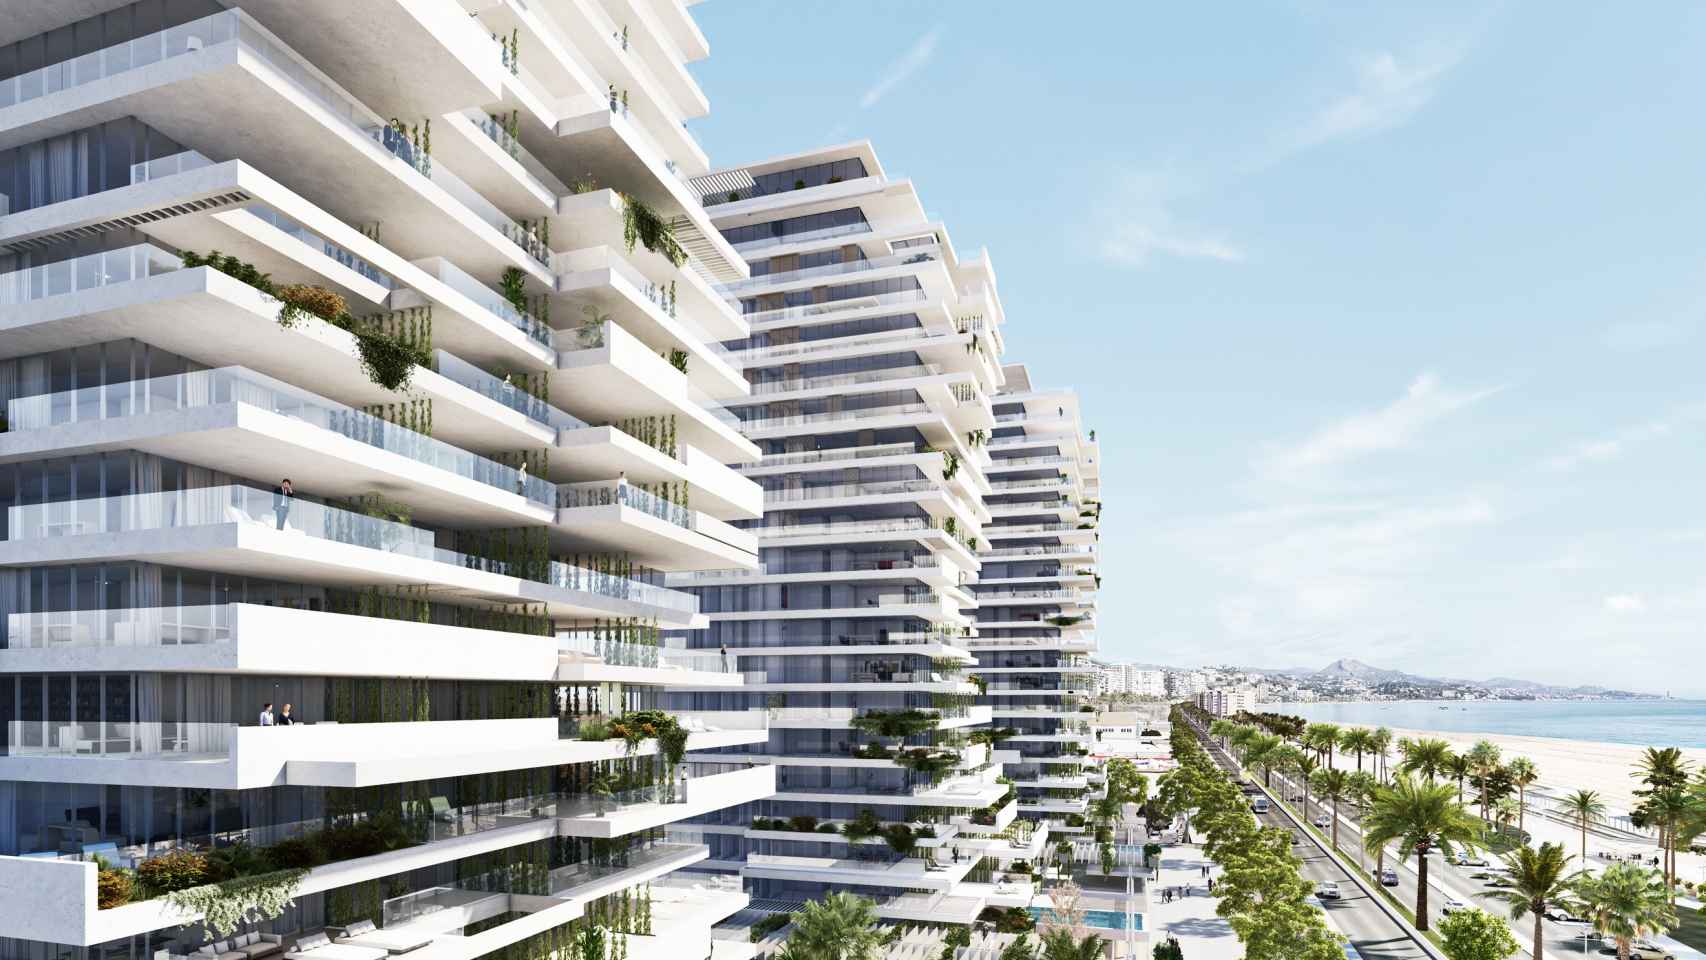 Diseño del estudio de Carlos Lamela para tres torres en el litoral oeste de Málaga.